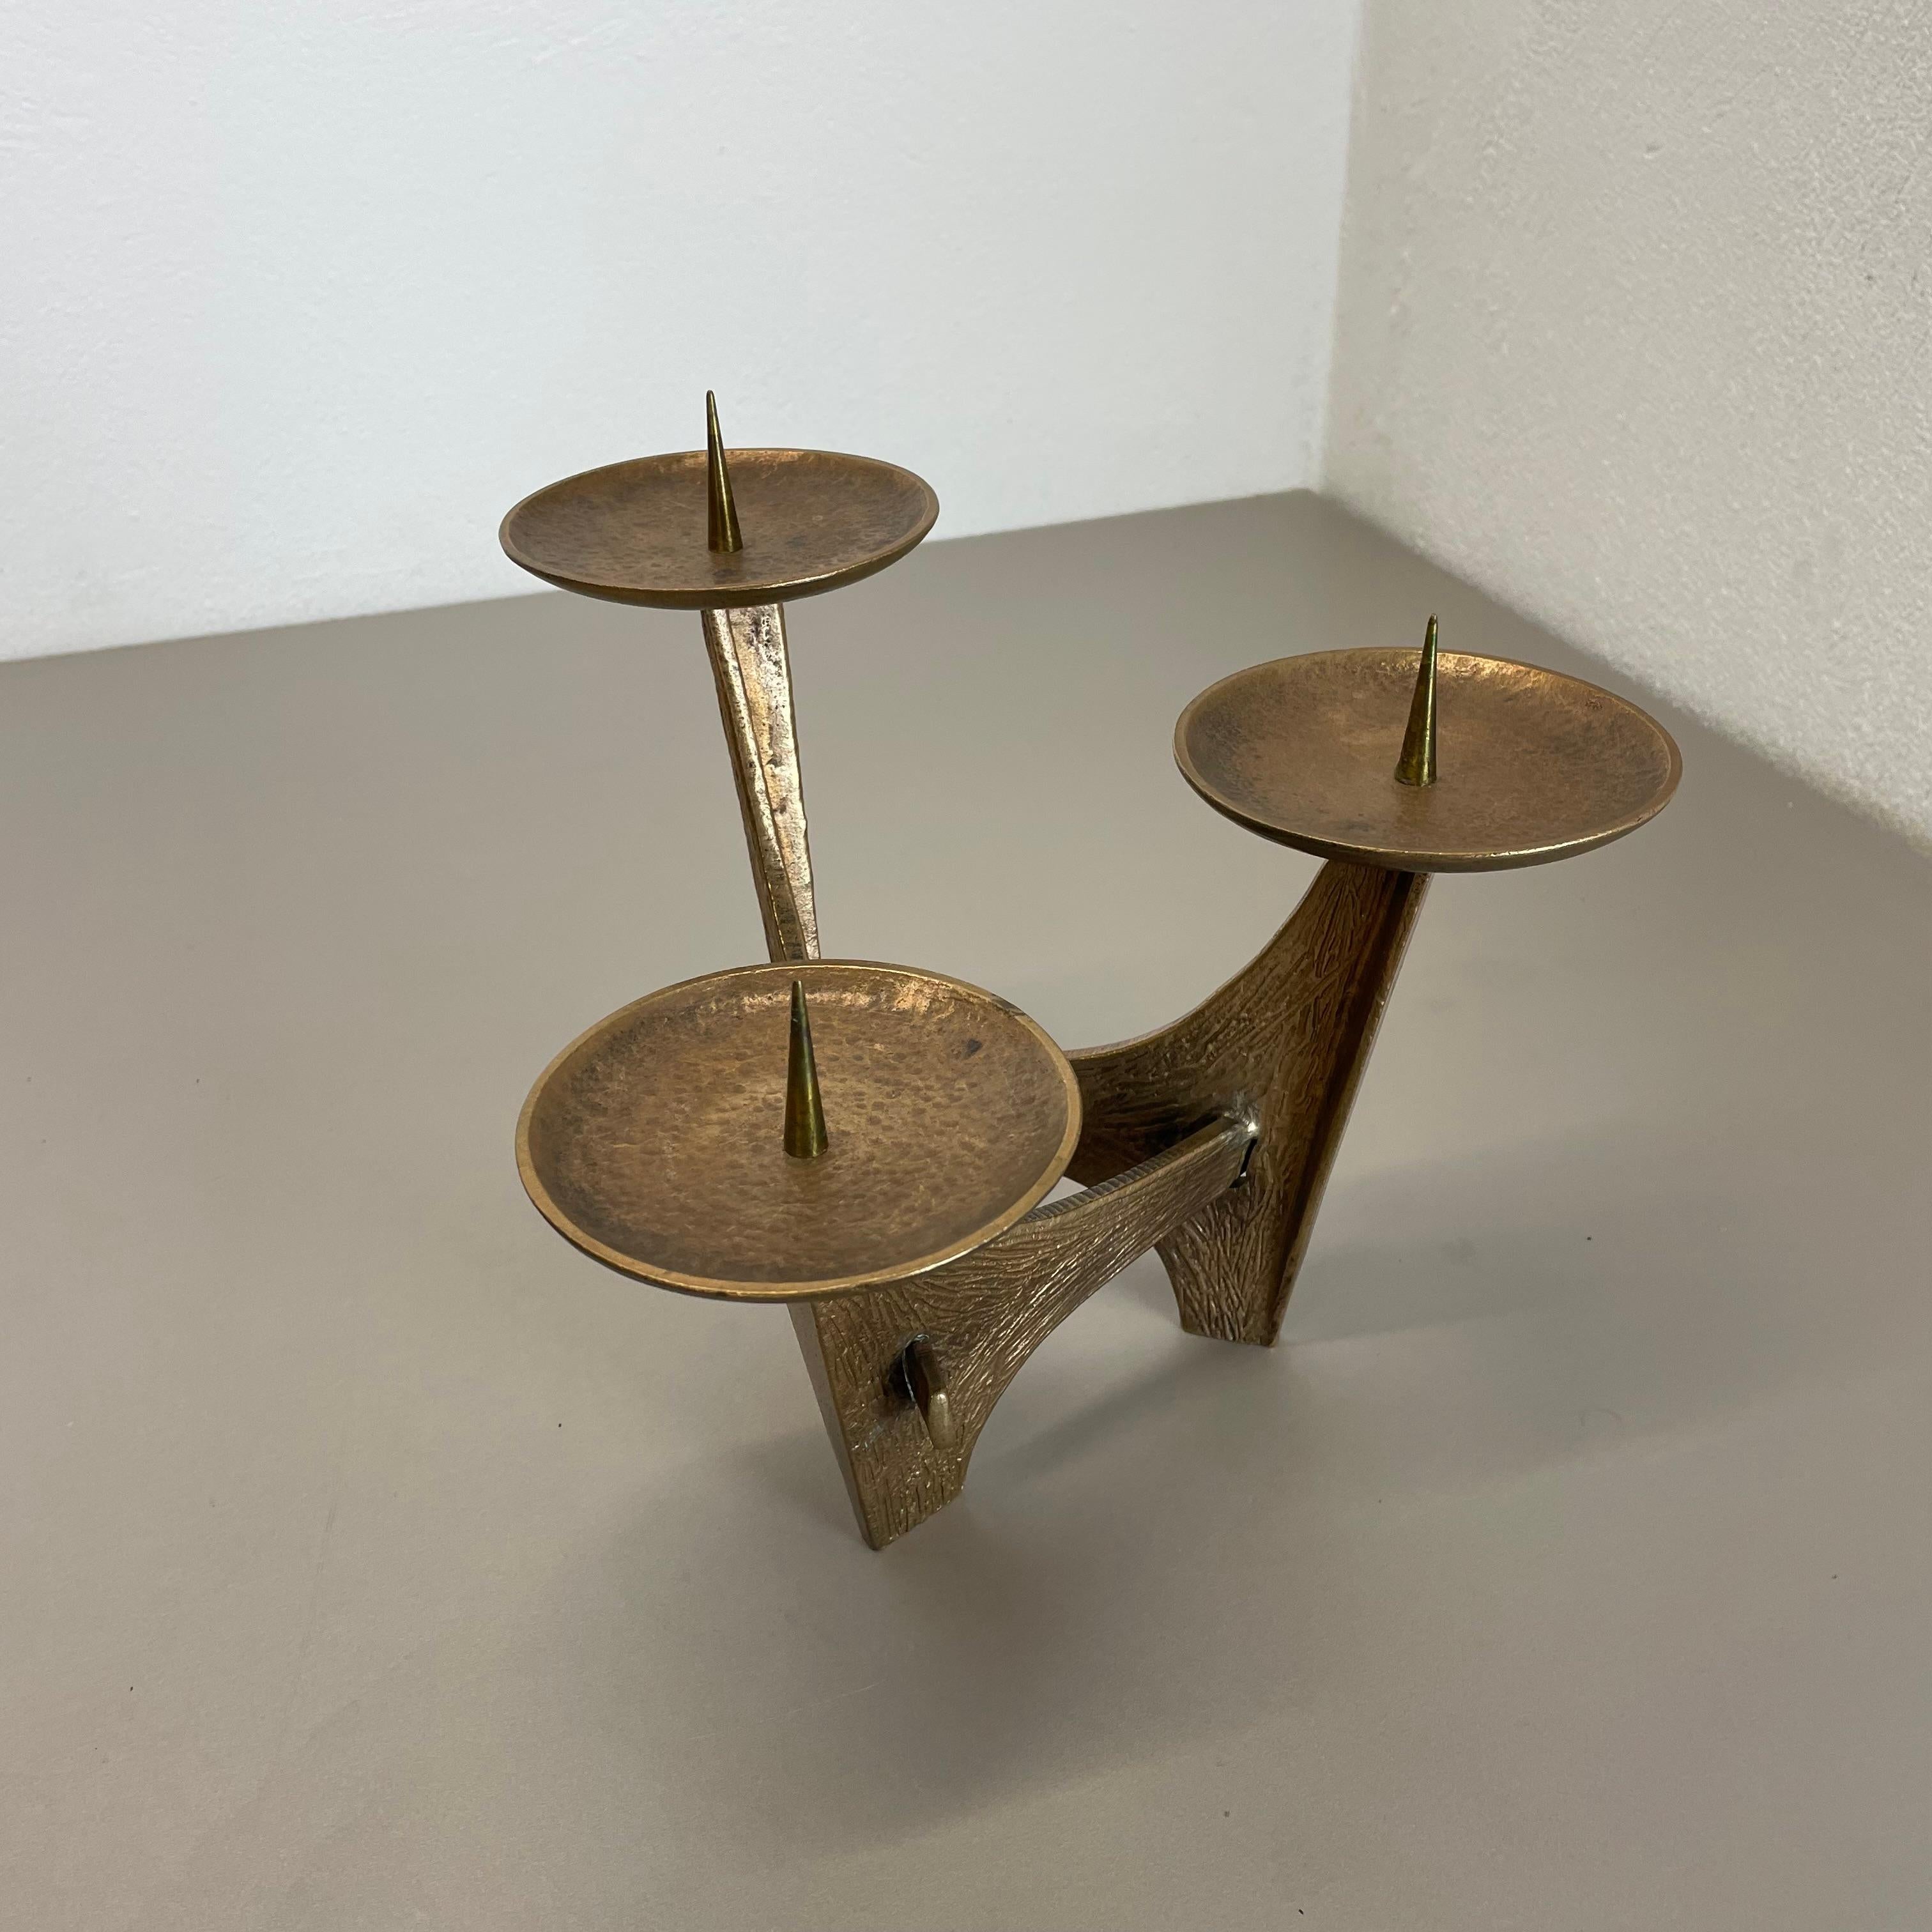 Modernist 1.8kg Sculptural Brutalist Bronze Metal Candleholder, France, 1960s For Sale 1